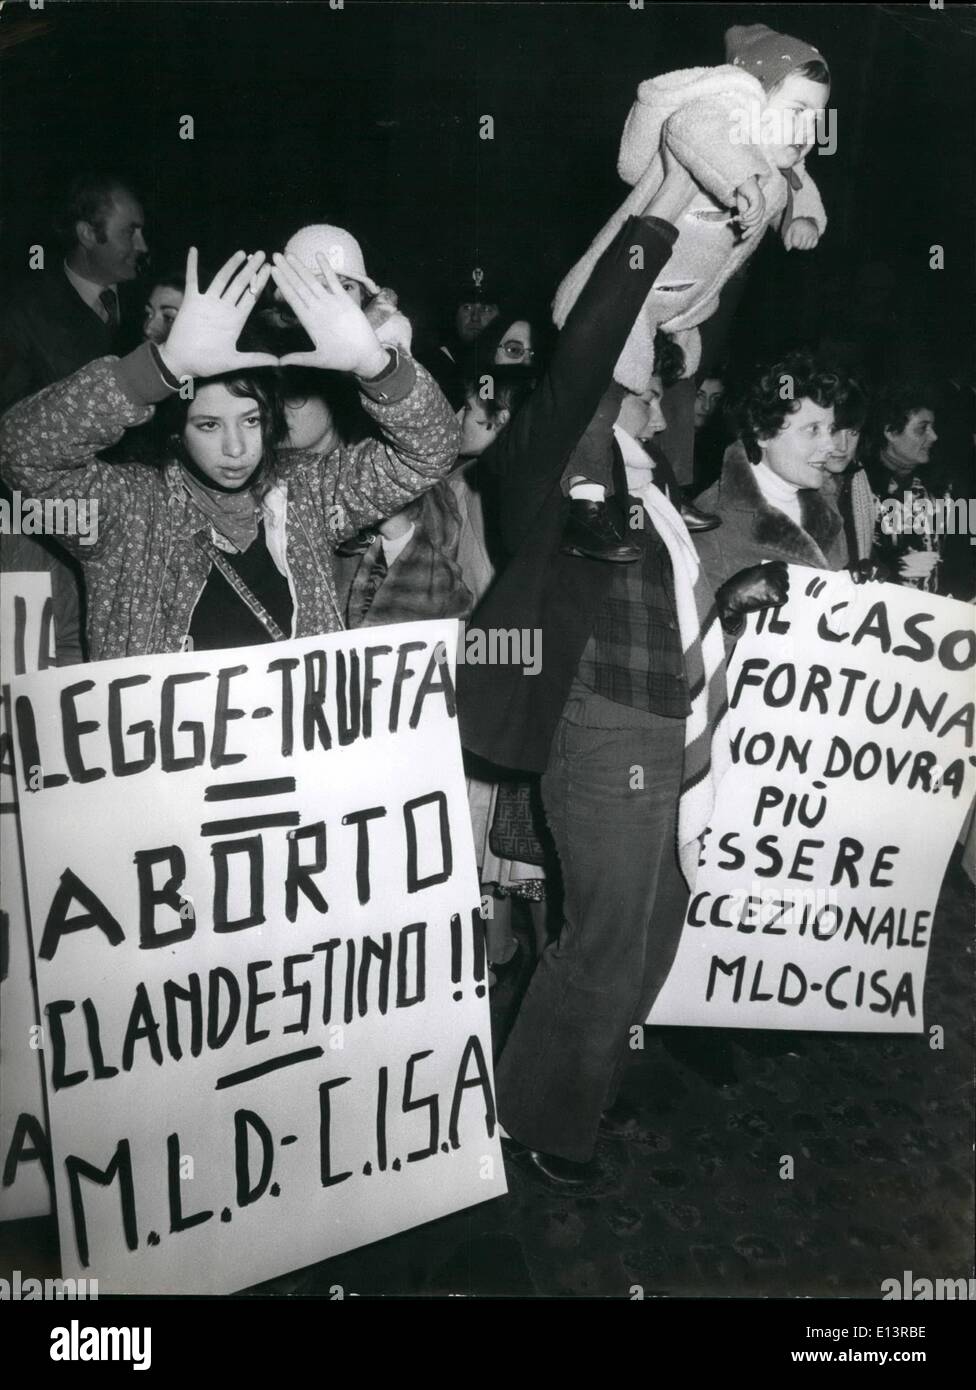 22. März 2012 - Abtreibung Rallye - teilgenommen viele Demonstranten eine Kundgebung organisiert durch die Feminine Bewegung vor dem Parlament ein Gesetz einzuführen die freie Abtreibung in Italien gefragt. OPS: Frauen mit ihren verschiedenen Postern während der Rallye gesehen. Stockfoto